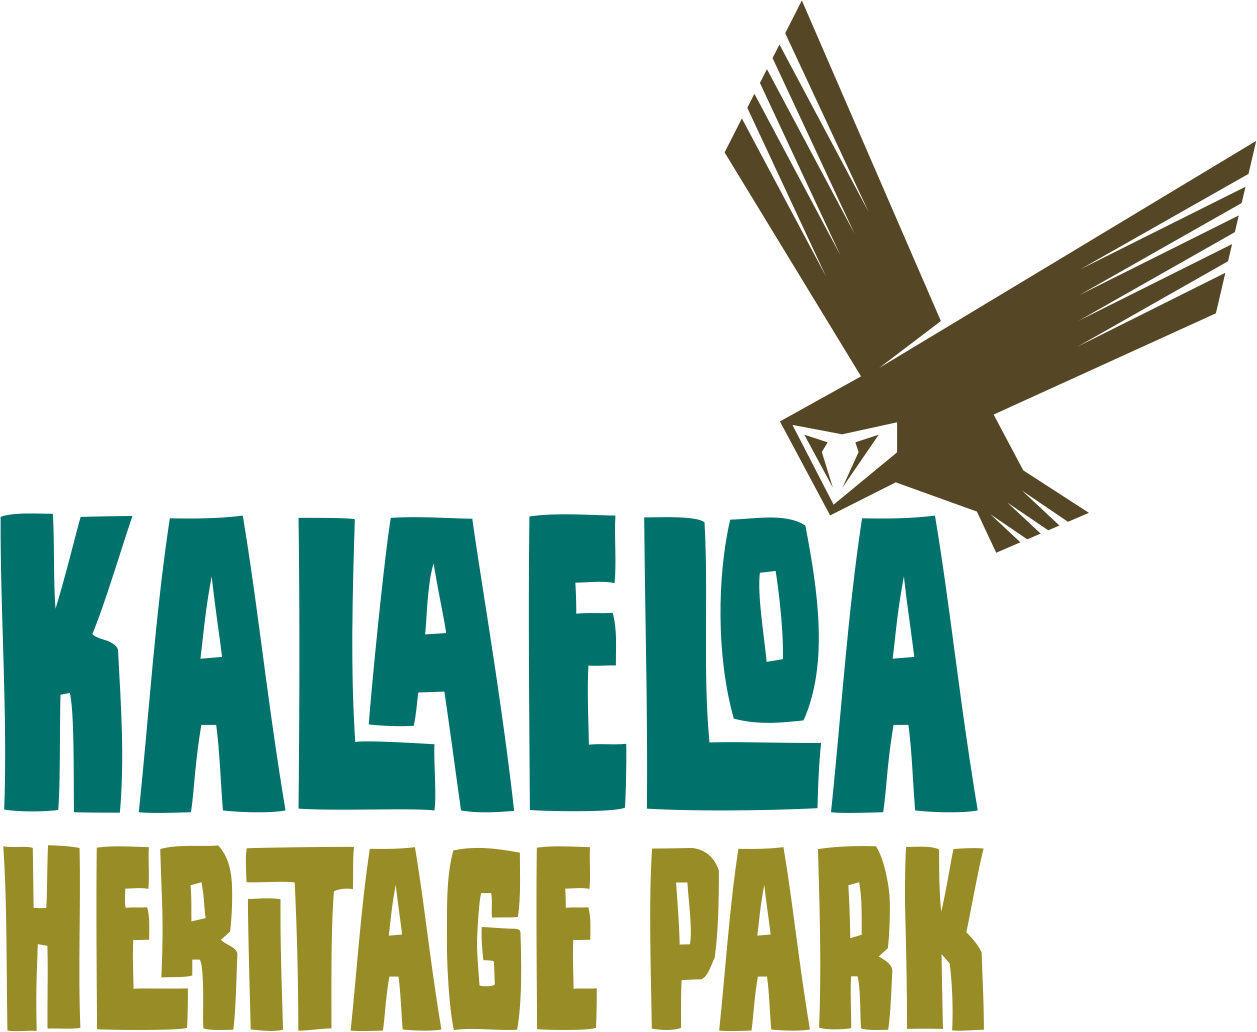 Kalaeloa Heritage Park